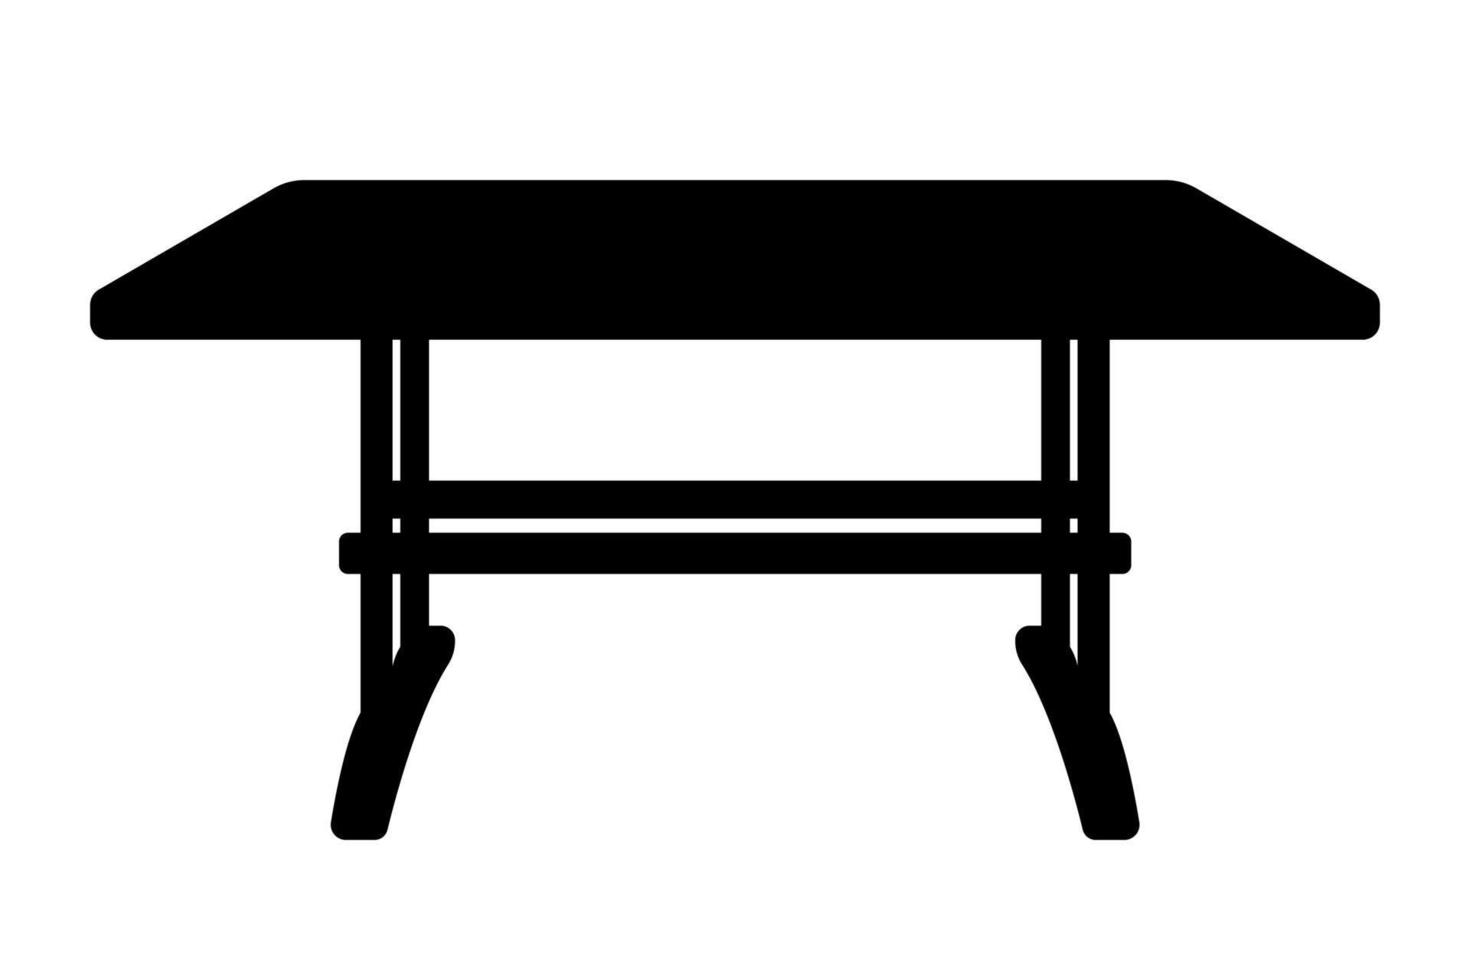 aanrechttafel, meubels silhouet illustratie. vector